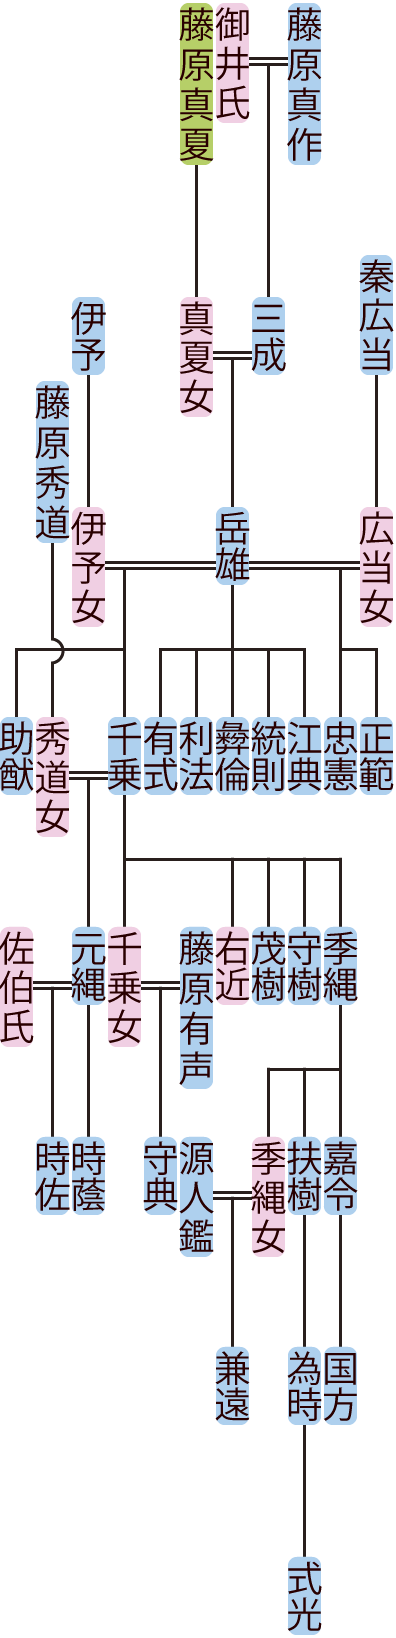 藤原岳雄の系図